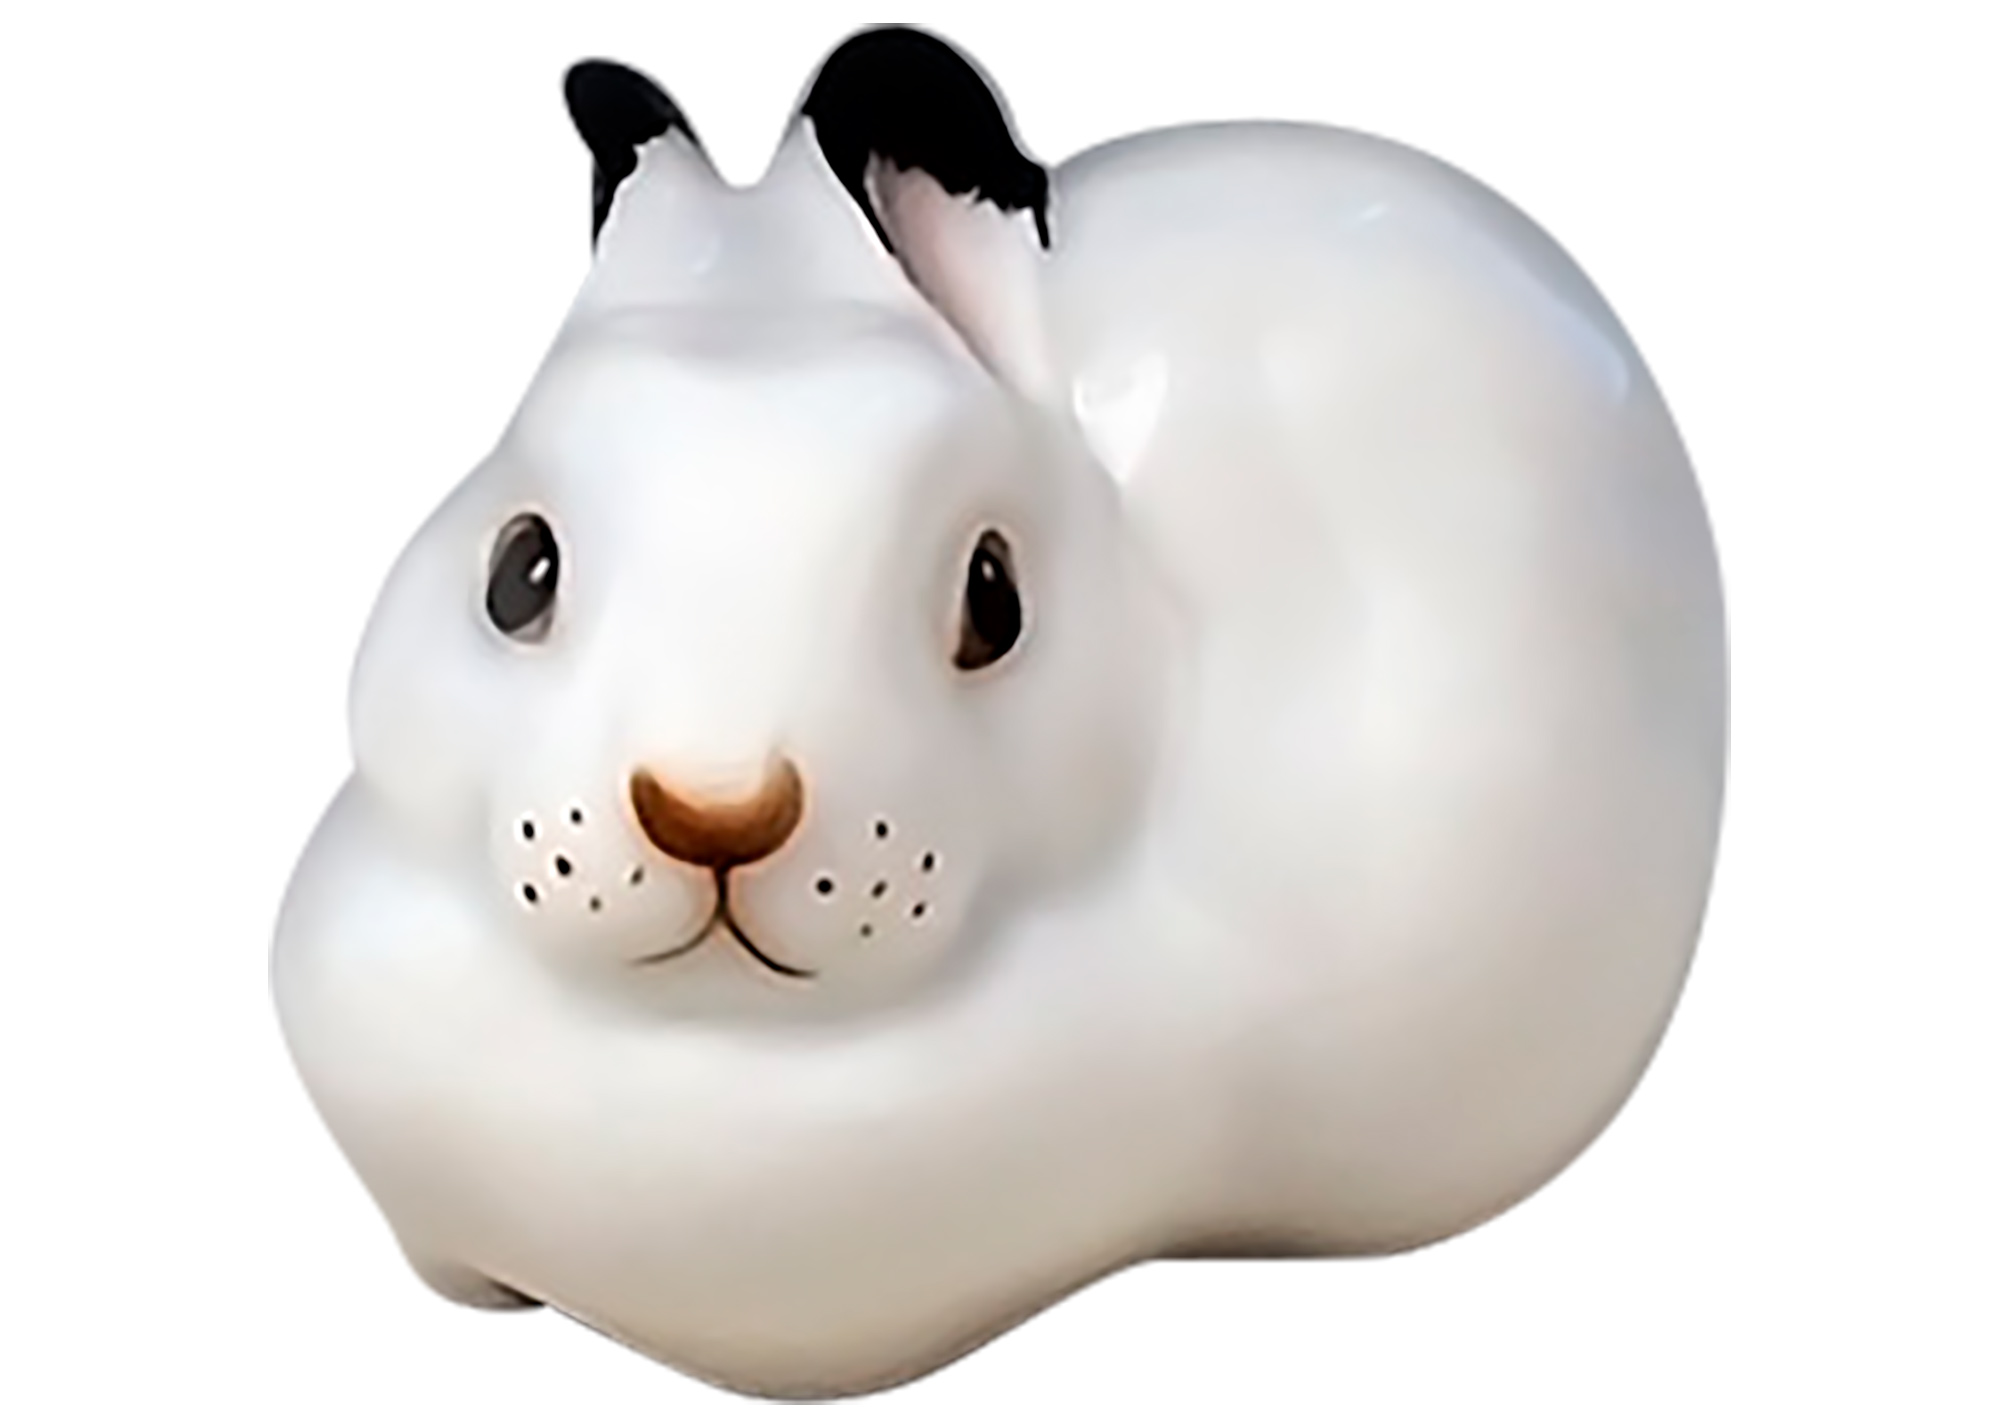 Buy Фарфоровая статуэтка "Белый кролик" at GoldenCockerel.com